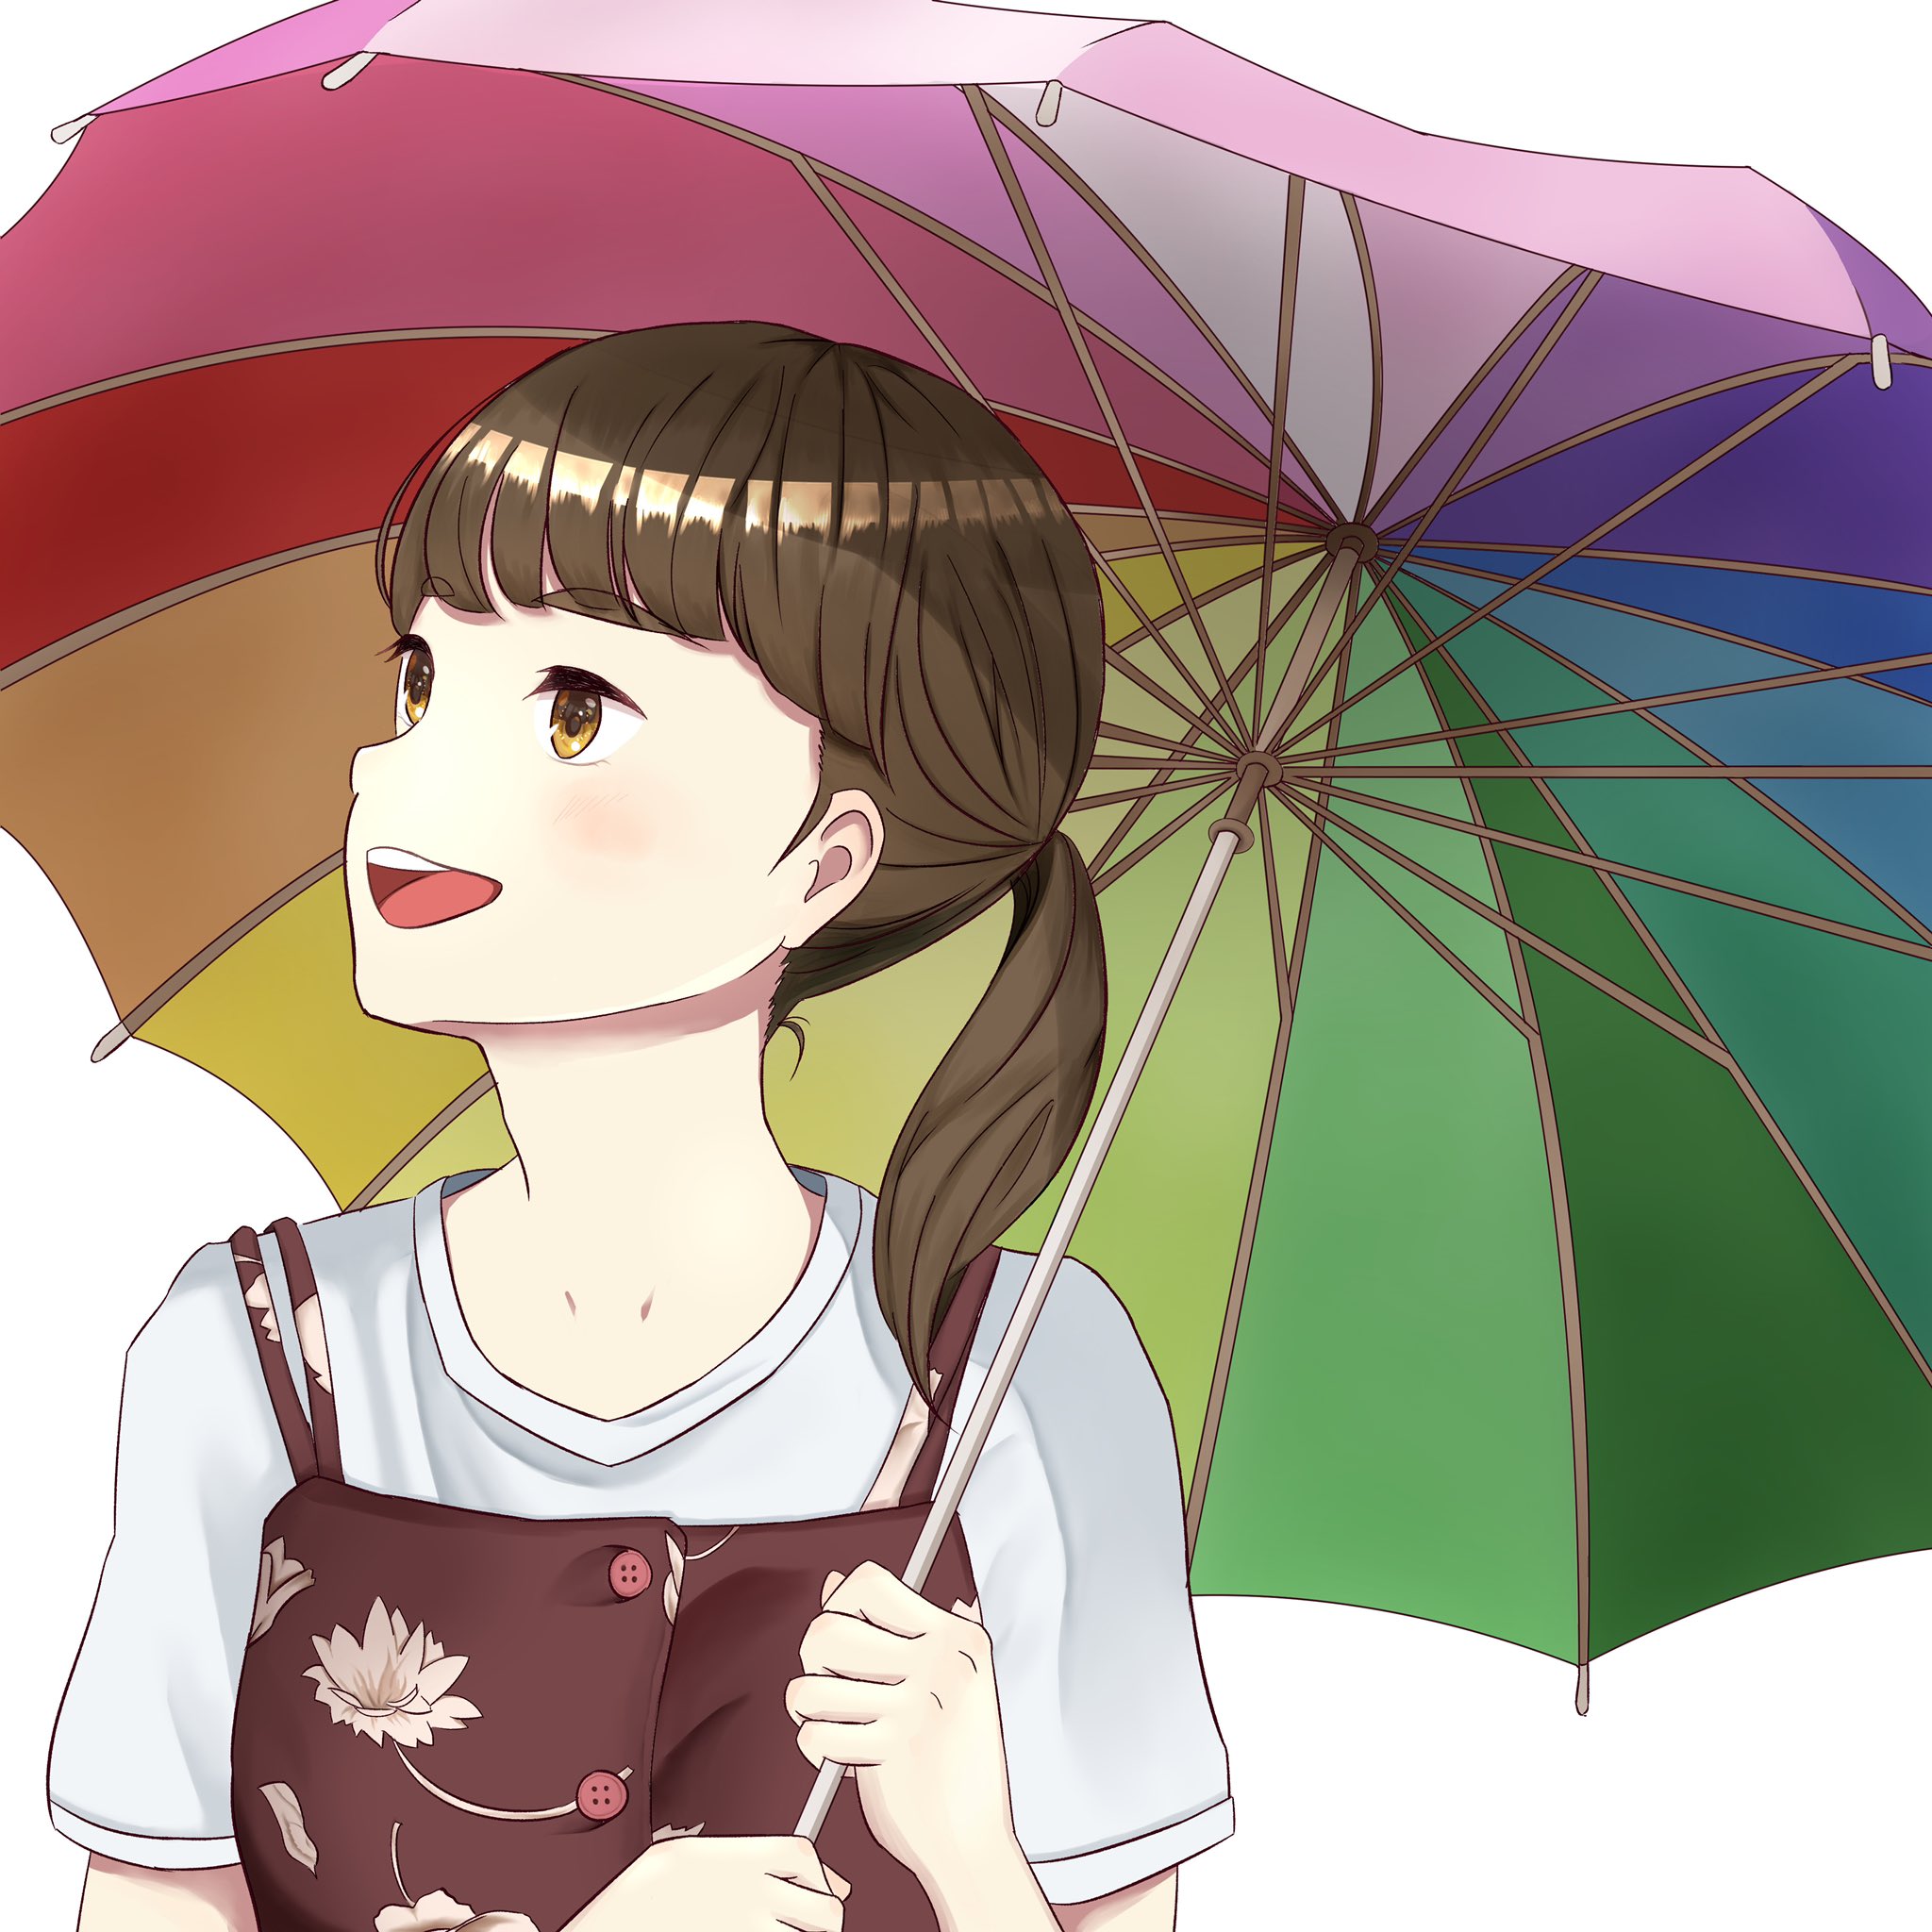 Twitter এ インチ 虹色の傘を持つ少女のイラストを描きました 頑張ったよー T Co Gxwrhxfg5t ট ইট র